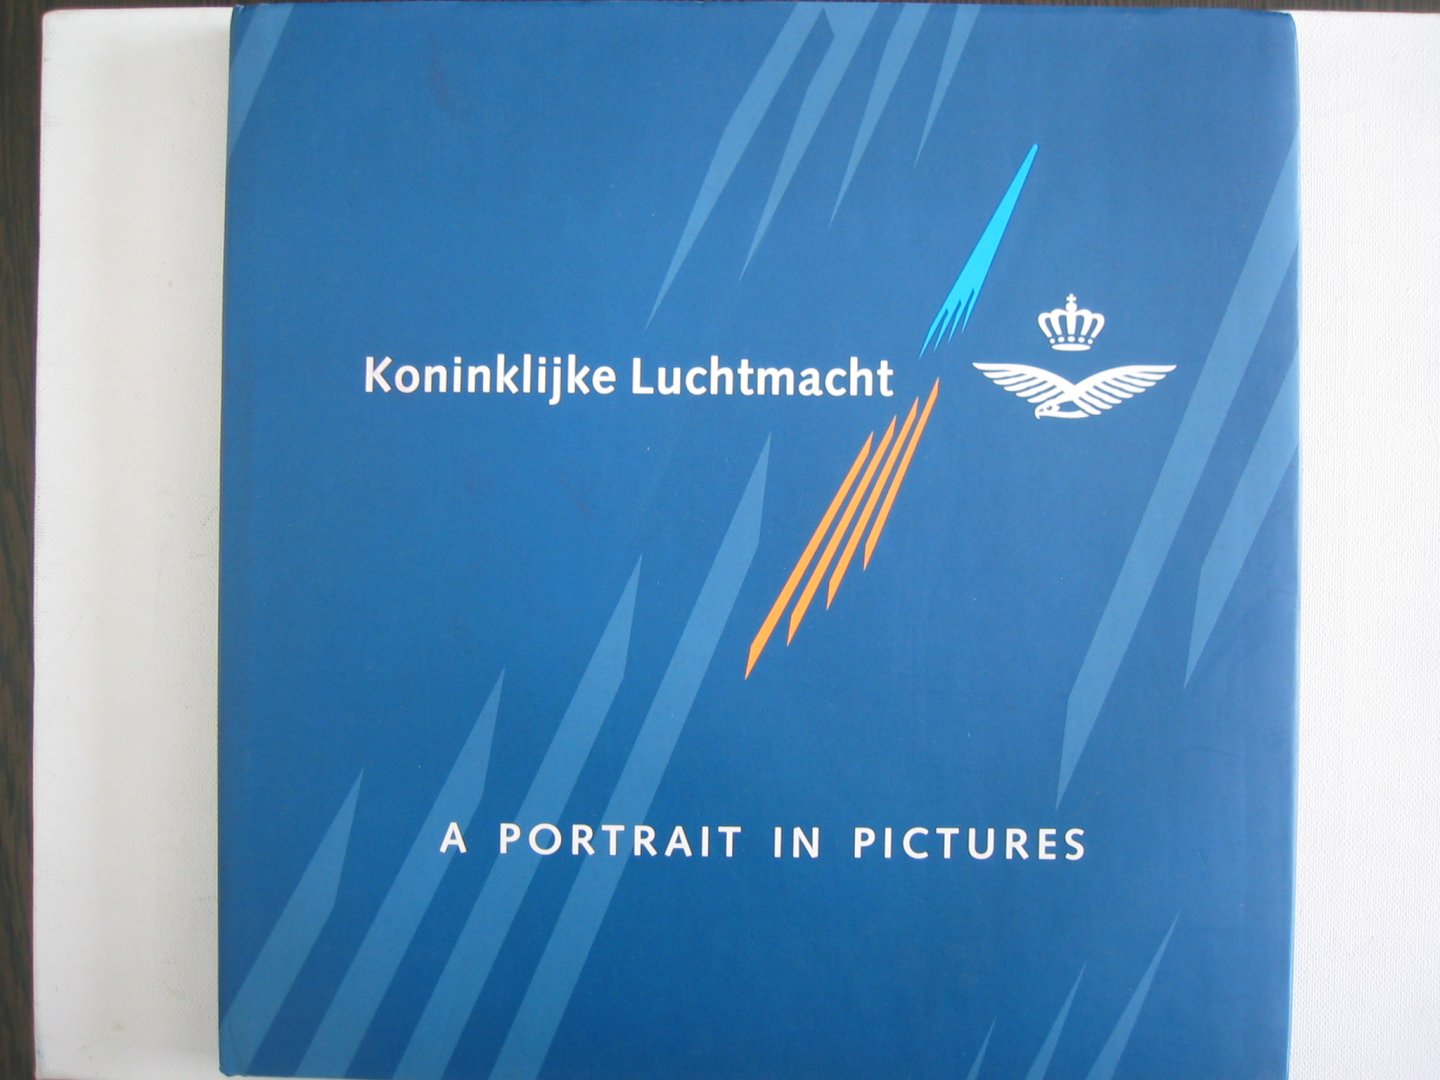 Eilander, Andre - Koninklijke Luchtmacht, A Portrait in Pictures